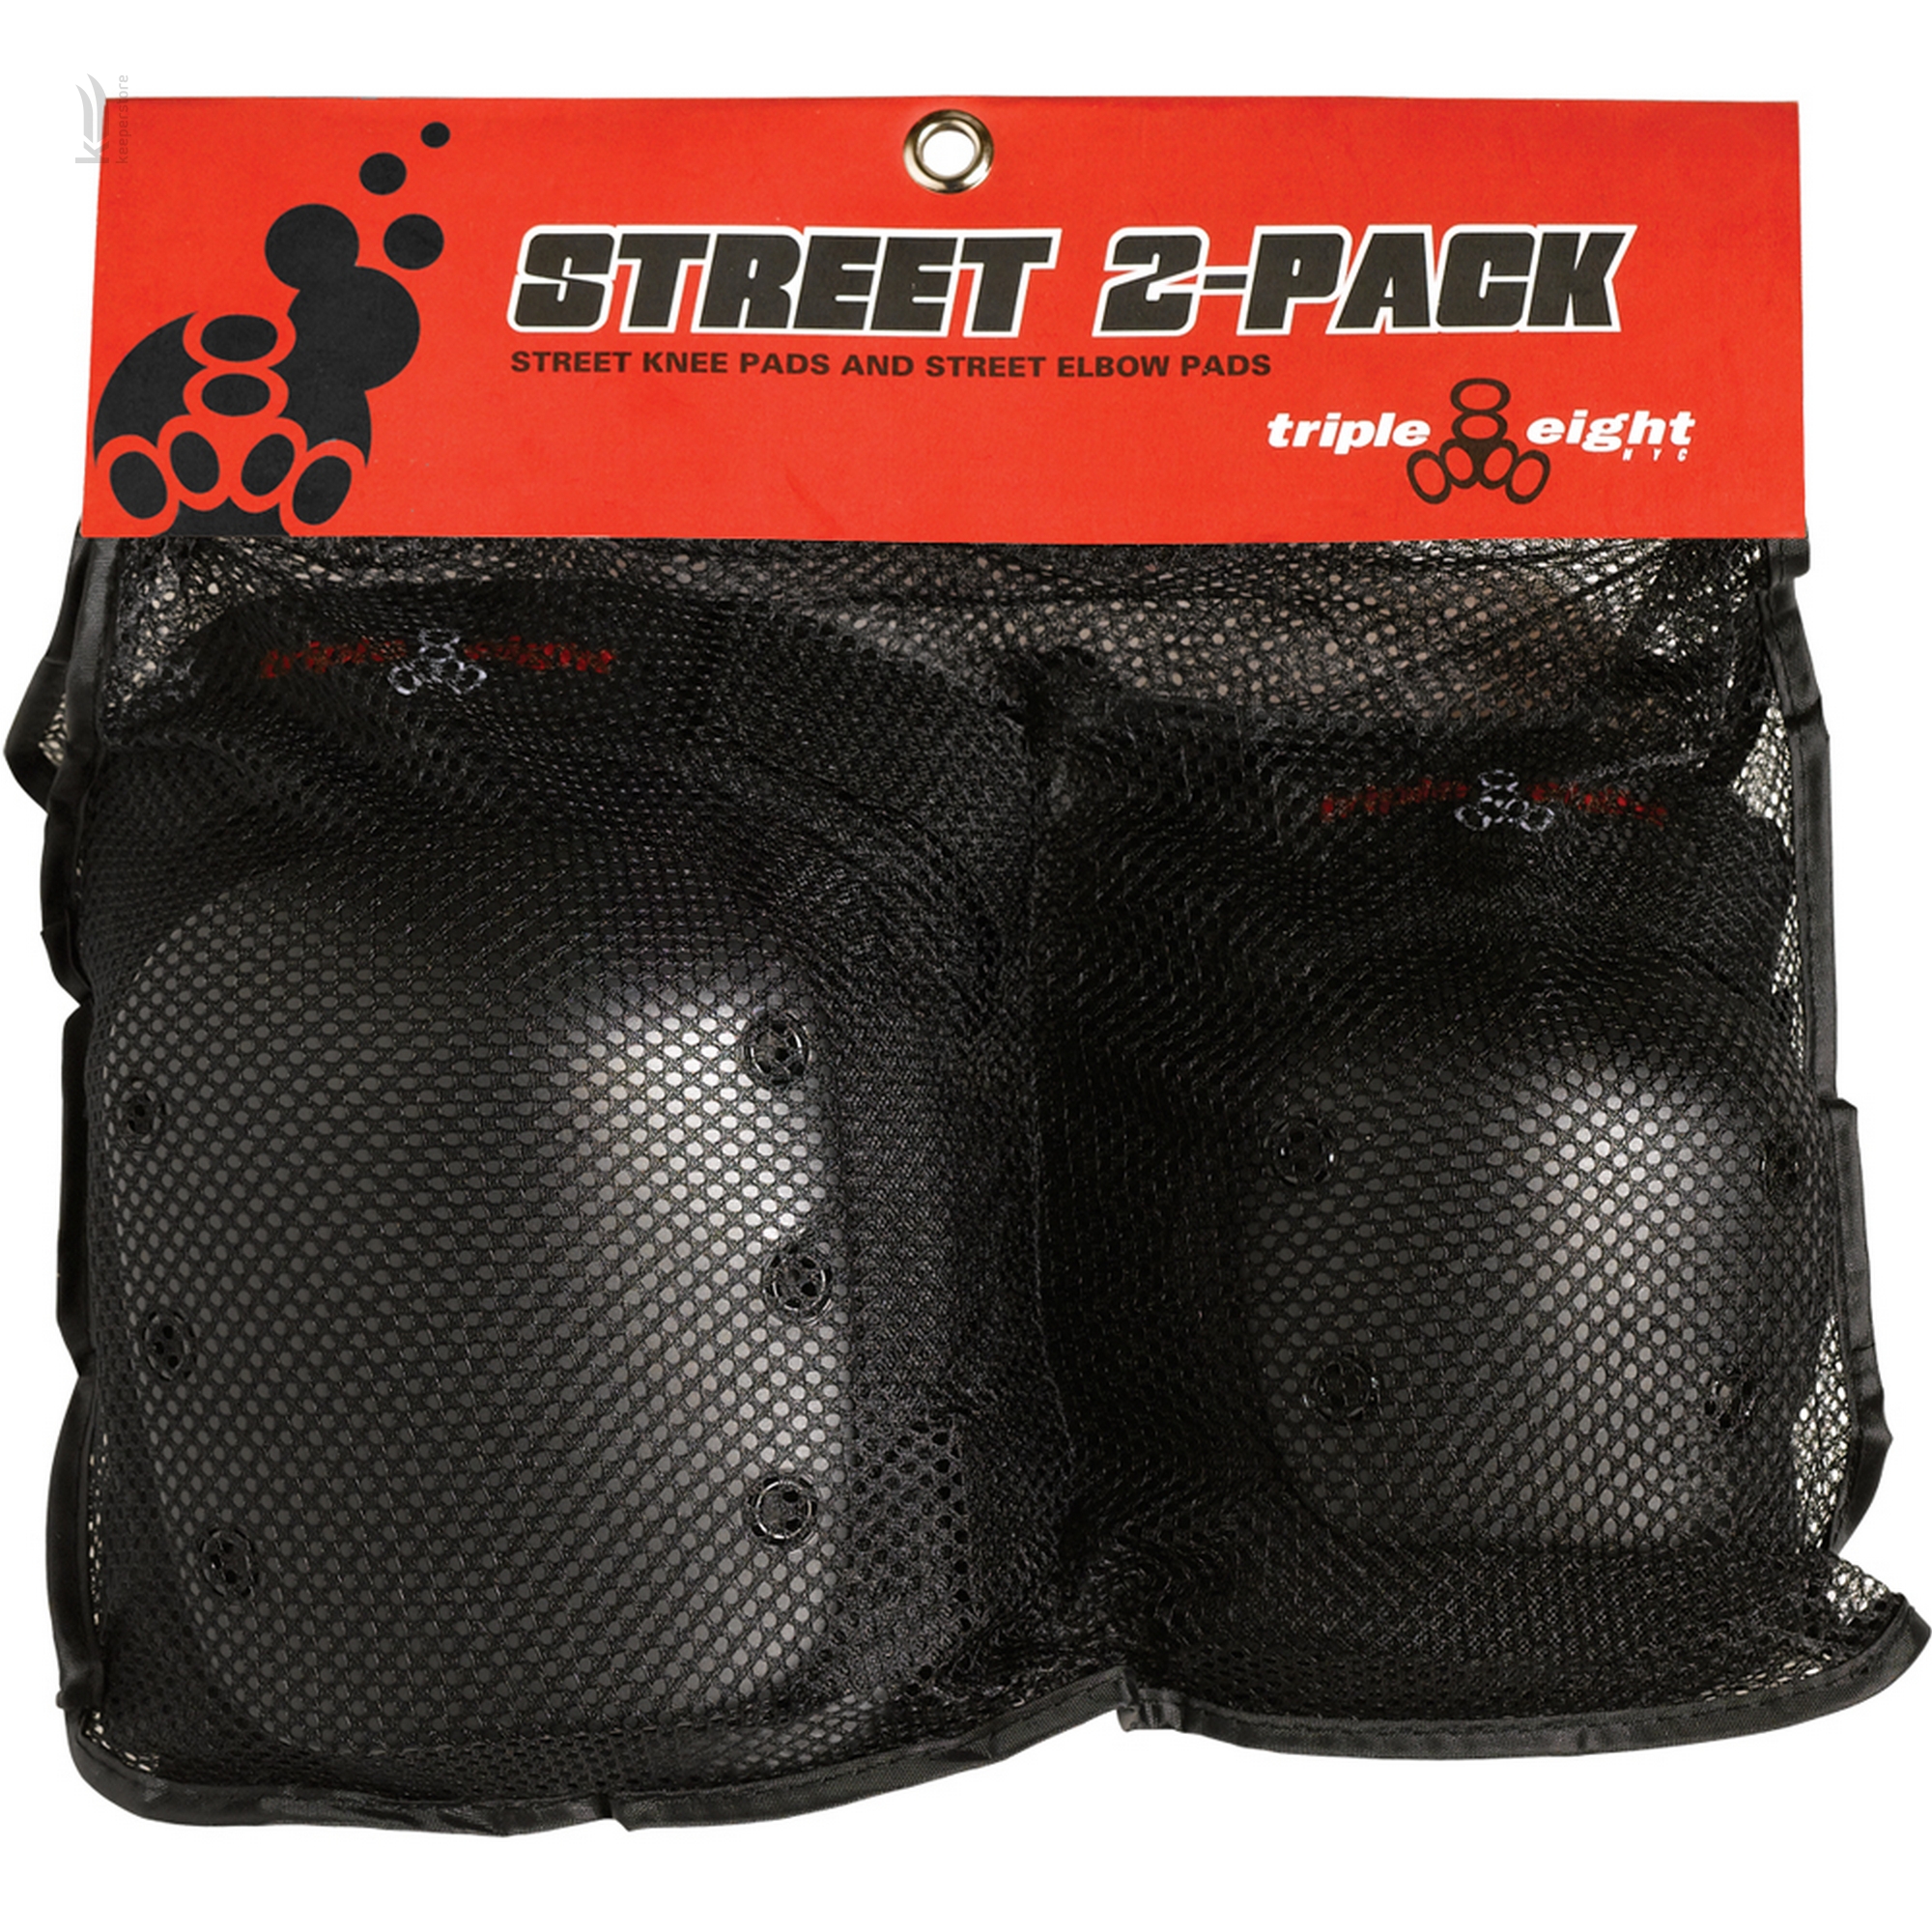 Захист для велосипедиста Triple8 Street 2-Pack (XS)